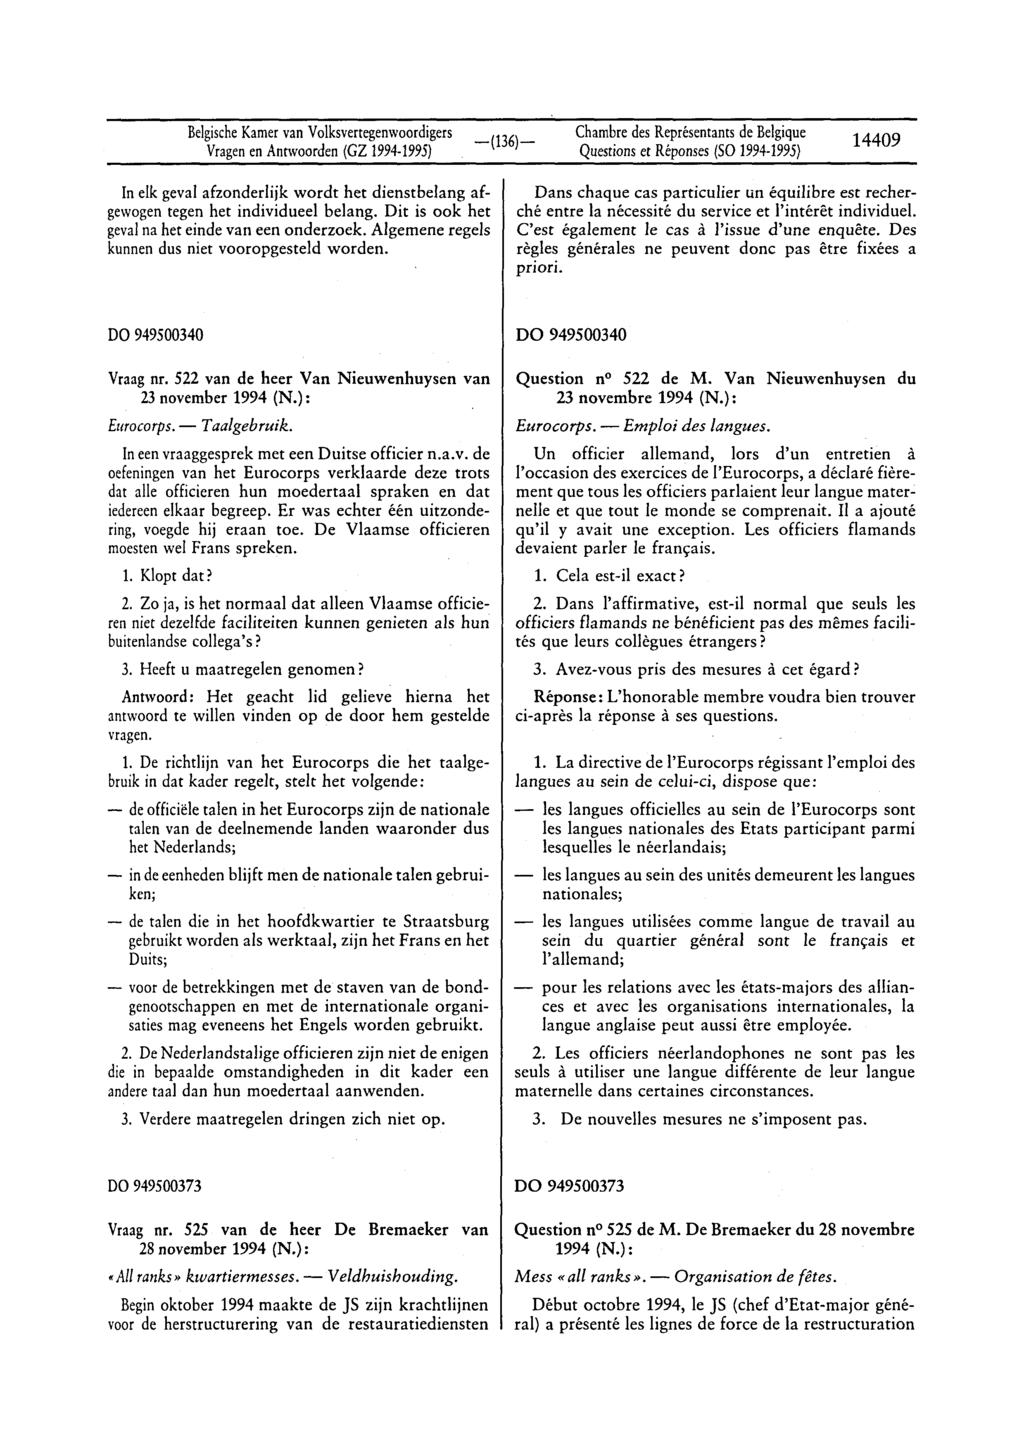 BelgischeKamervan Volksvertegenwoordigers Questionset Réponses(SO1994-1995) 14409 In elk geval afzonderlijk wordt het dienstbelang afgewogen tegen het individueel belang.